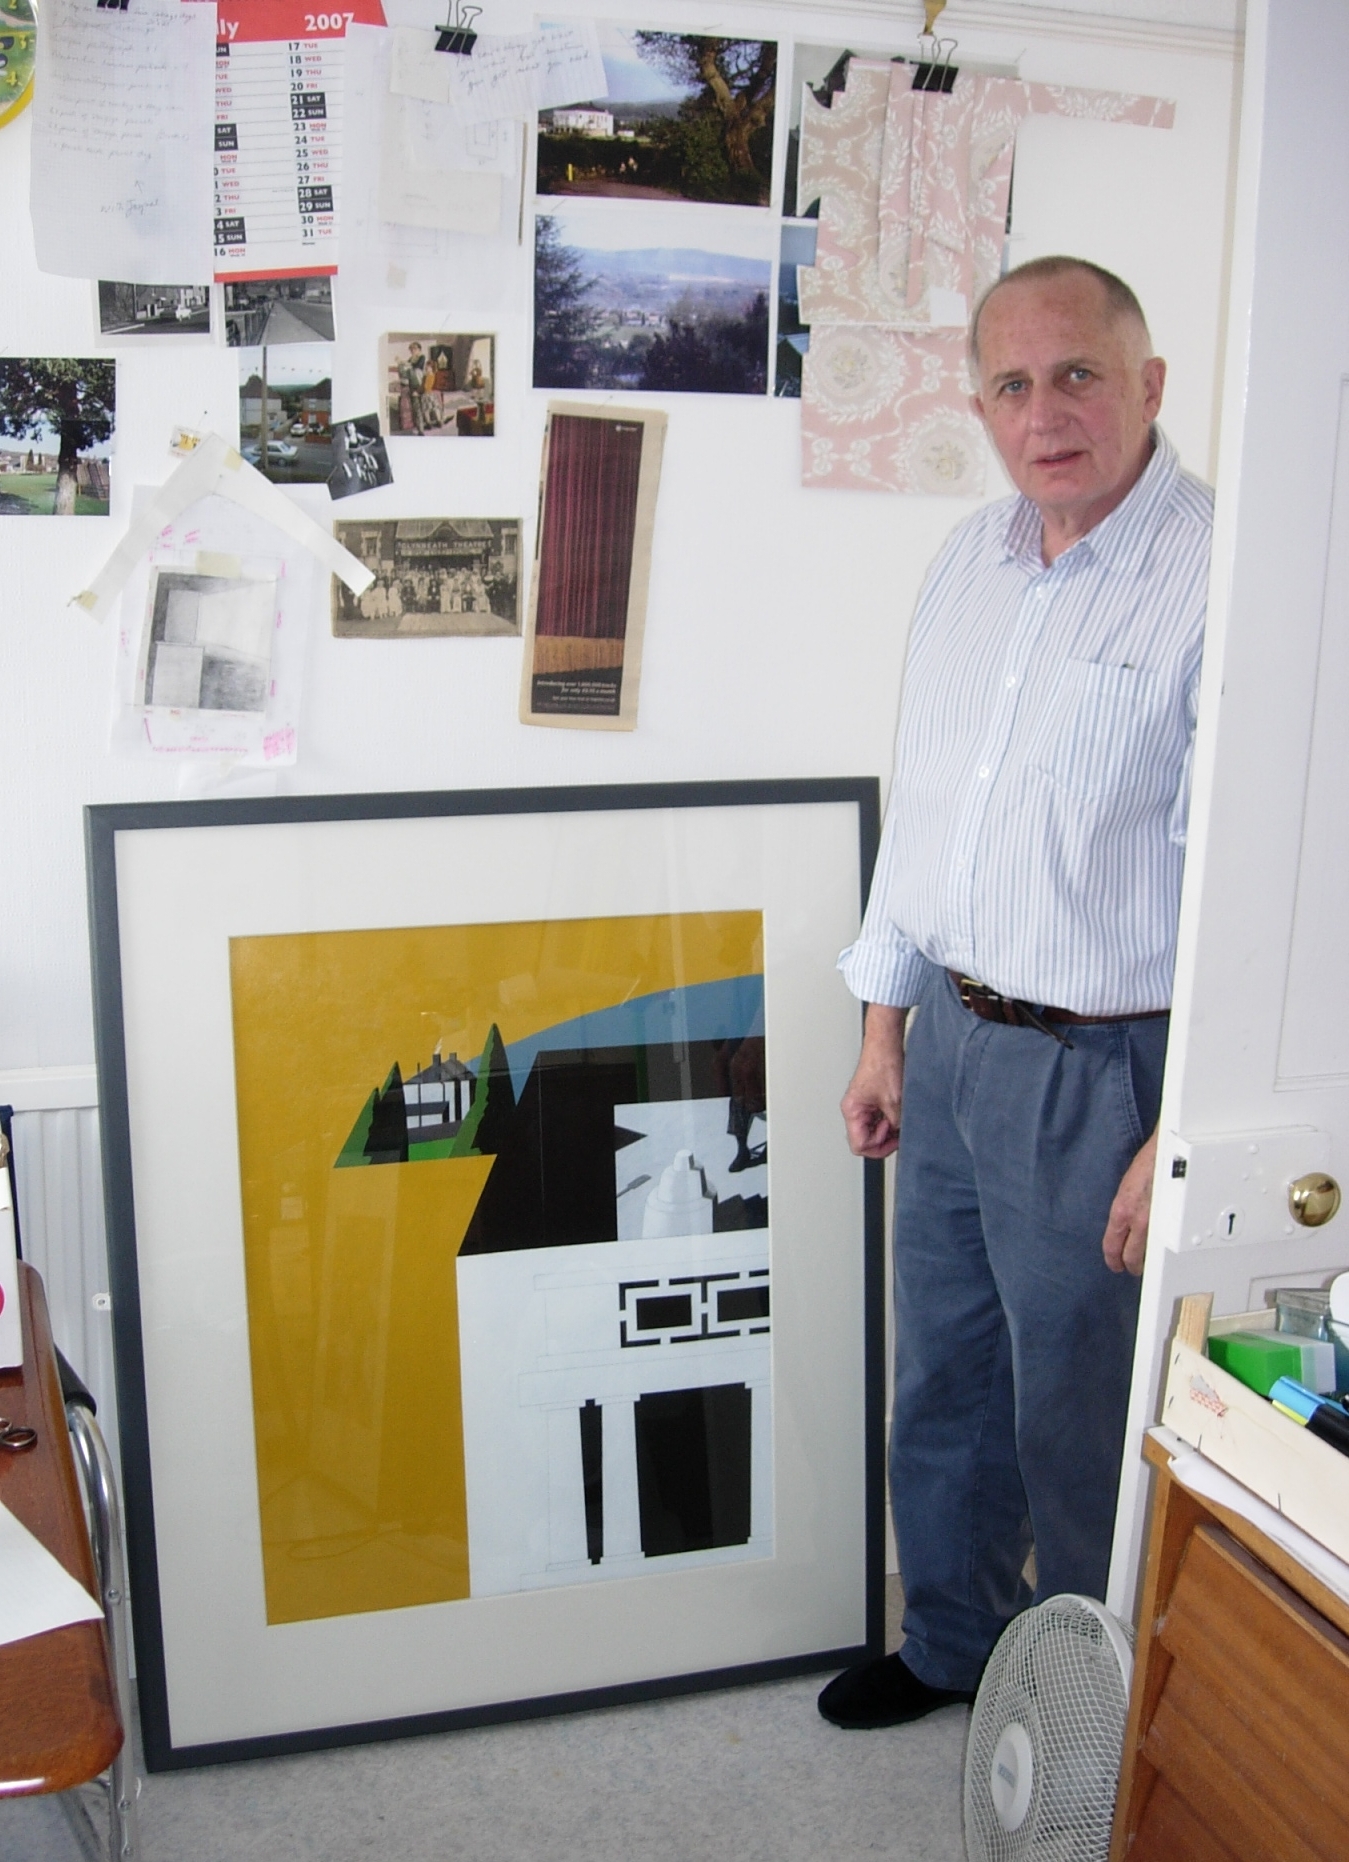 Ken Elias in his studio, Glynneath, 6 August 2007